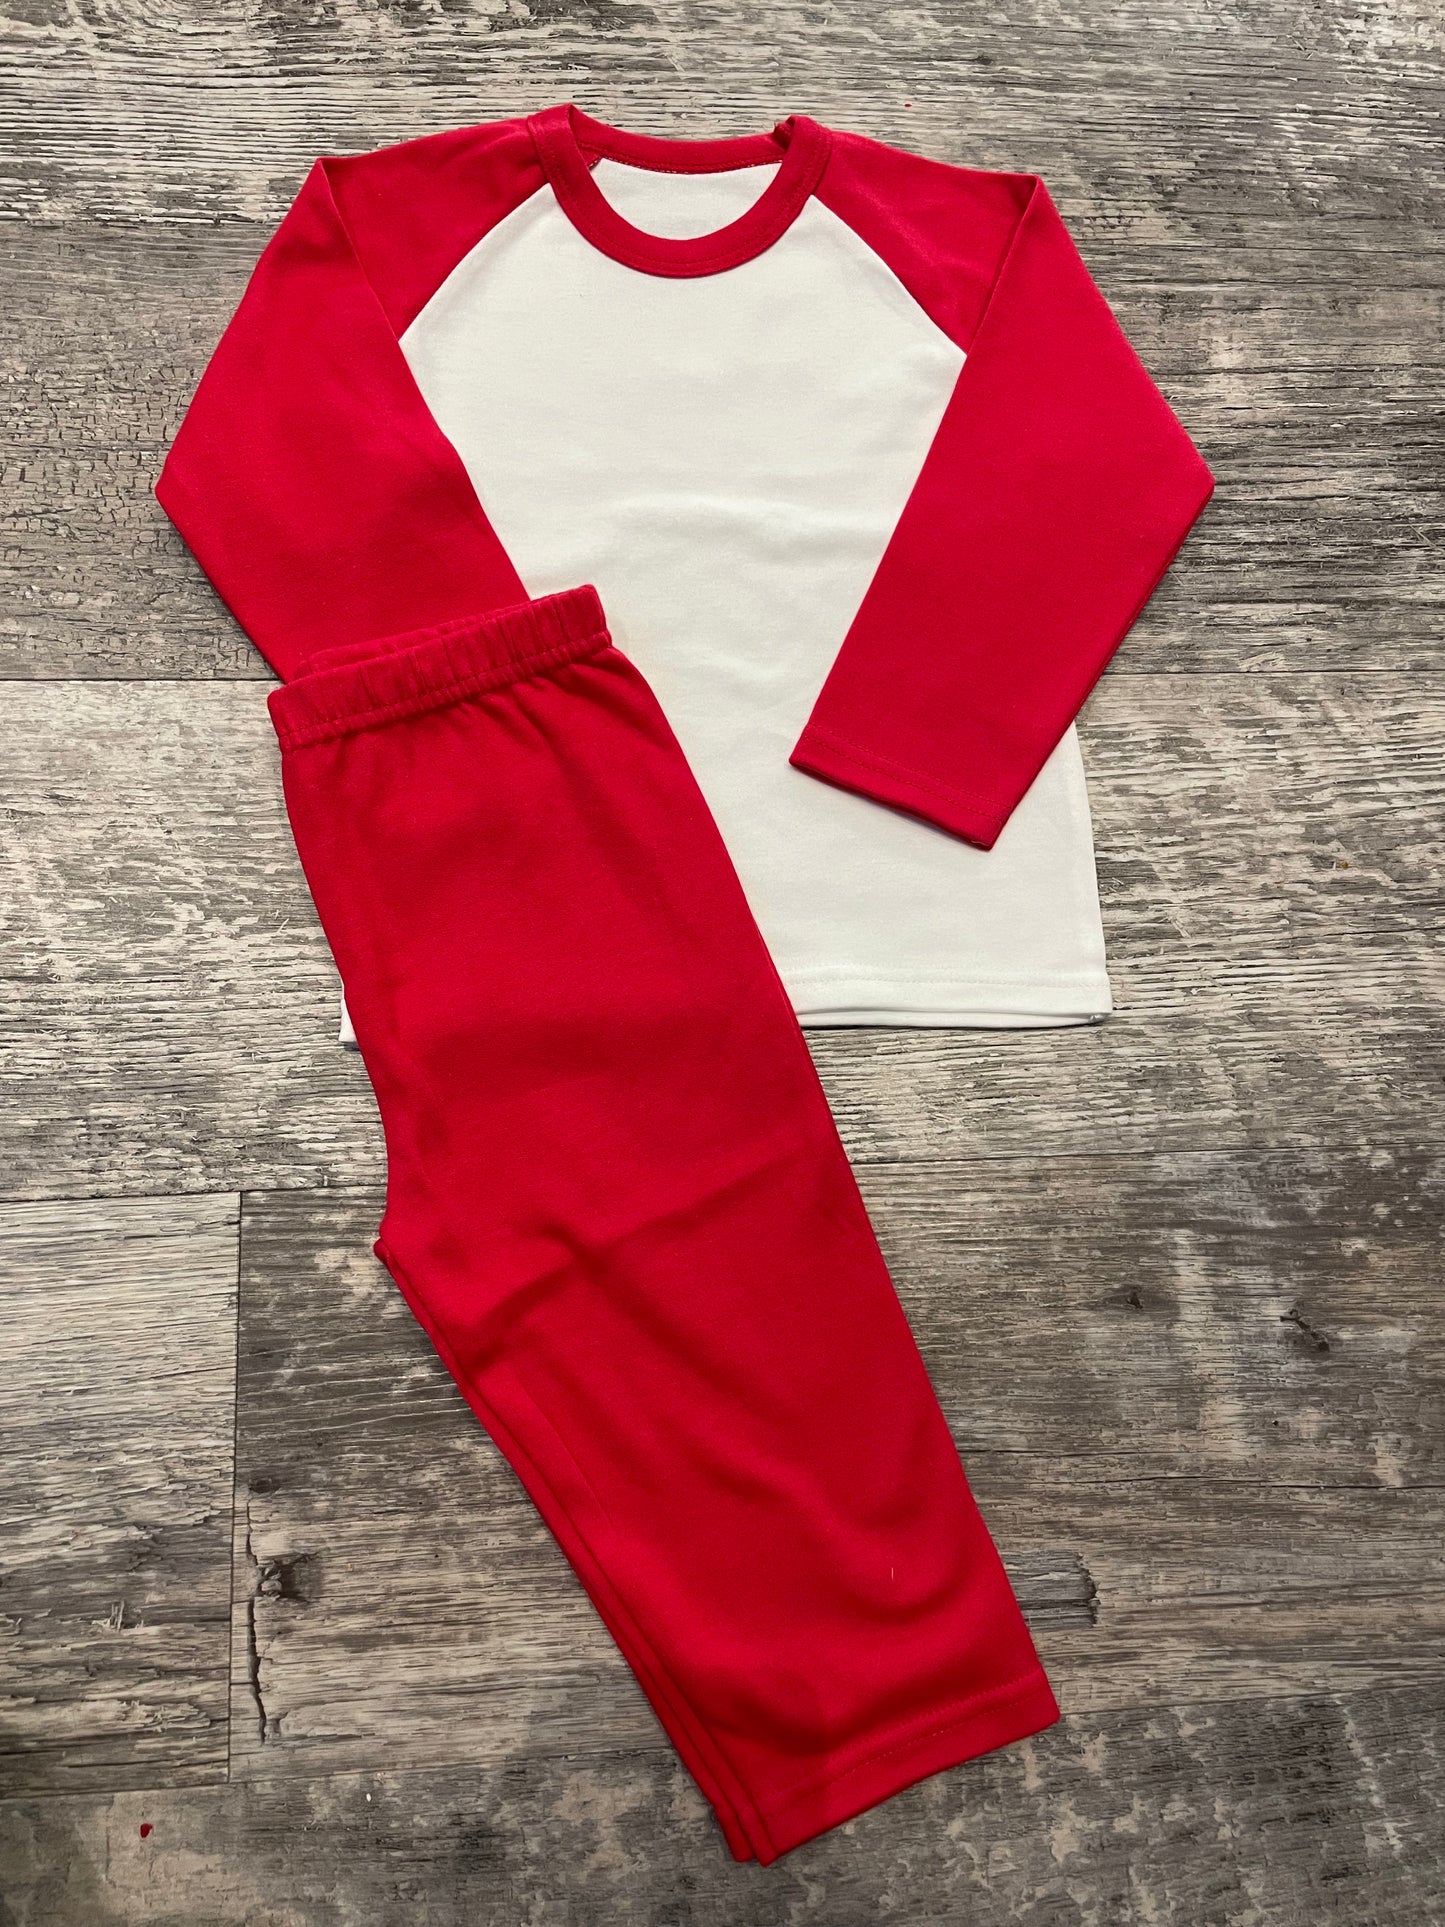 Personalised red & white pyjamas